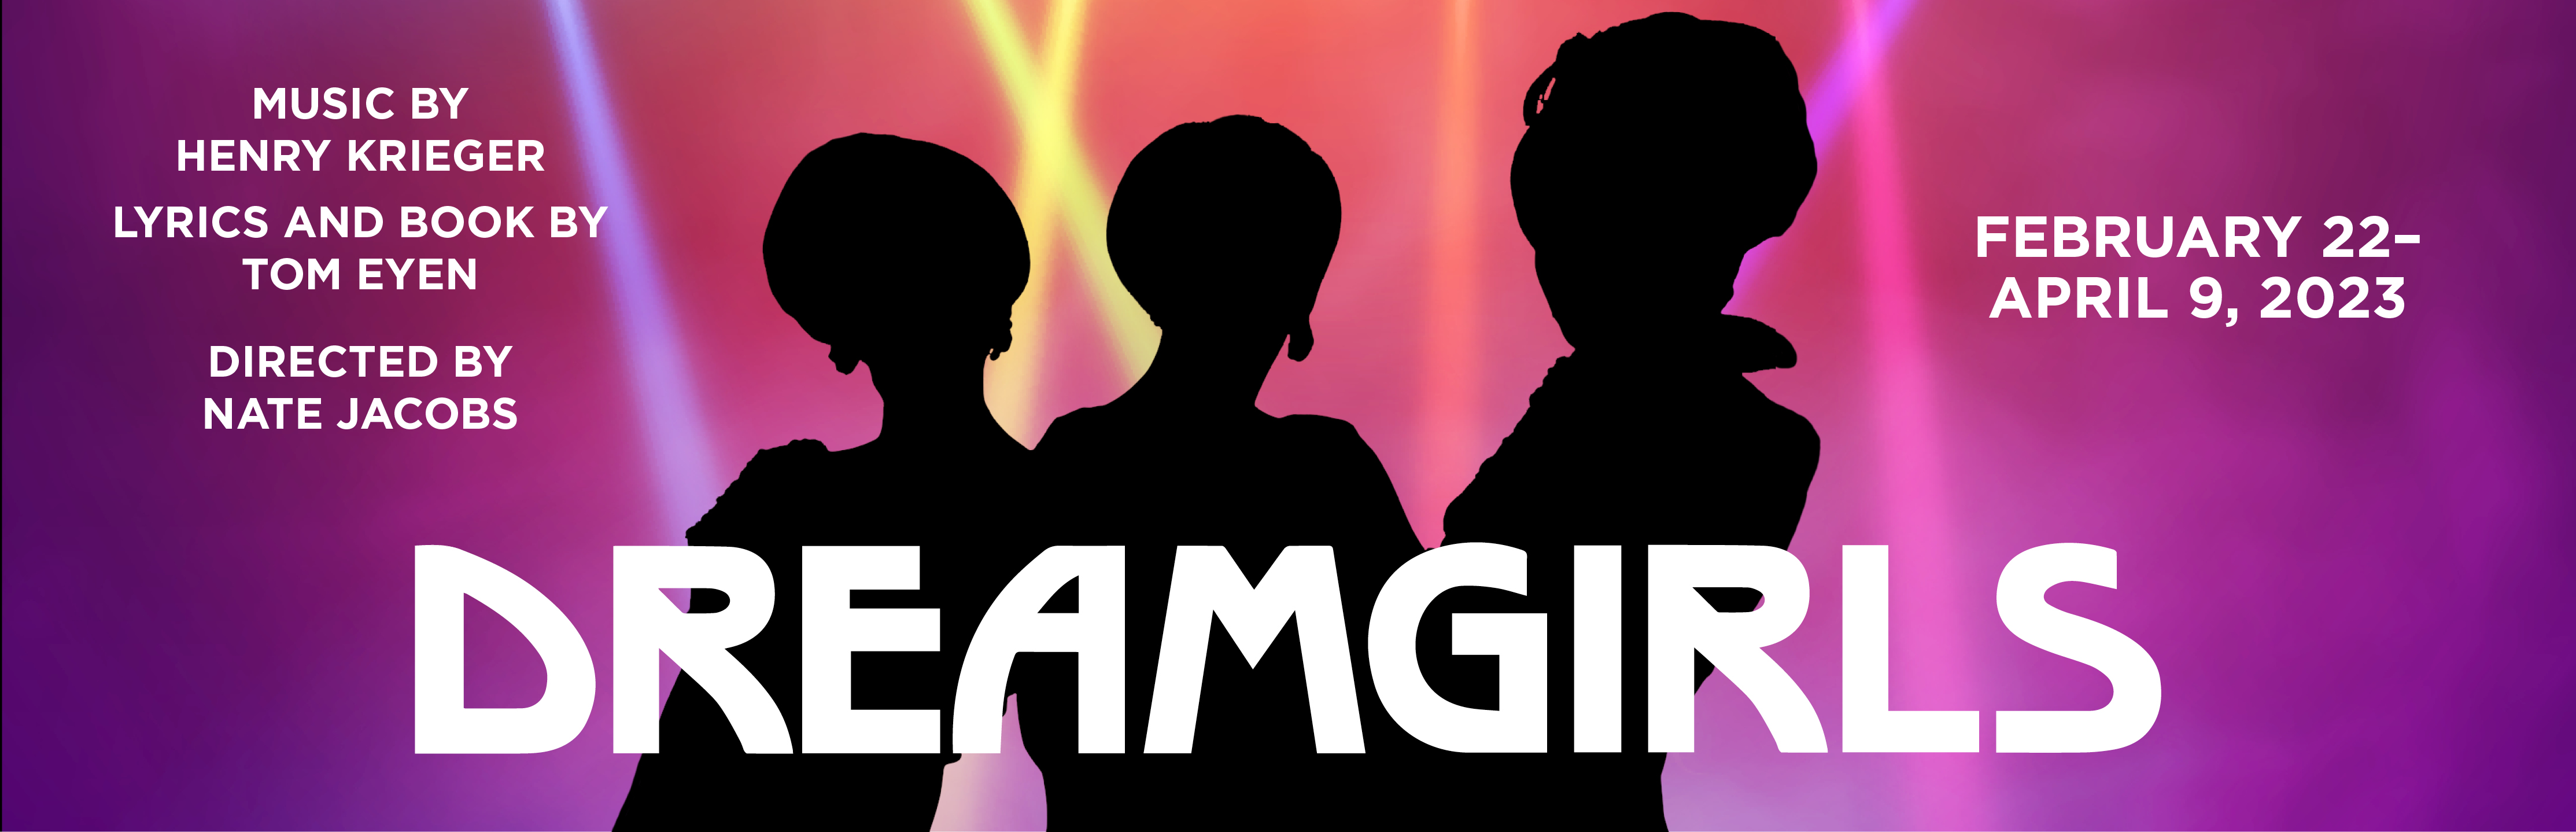 Dreamgirls: Feb 22 - April 9, 2023